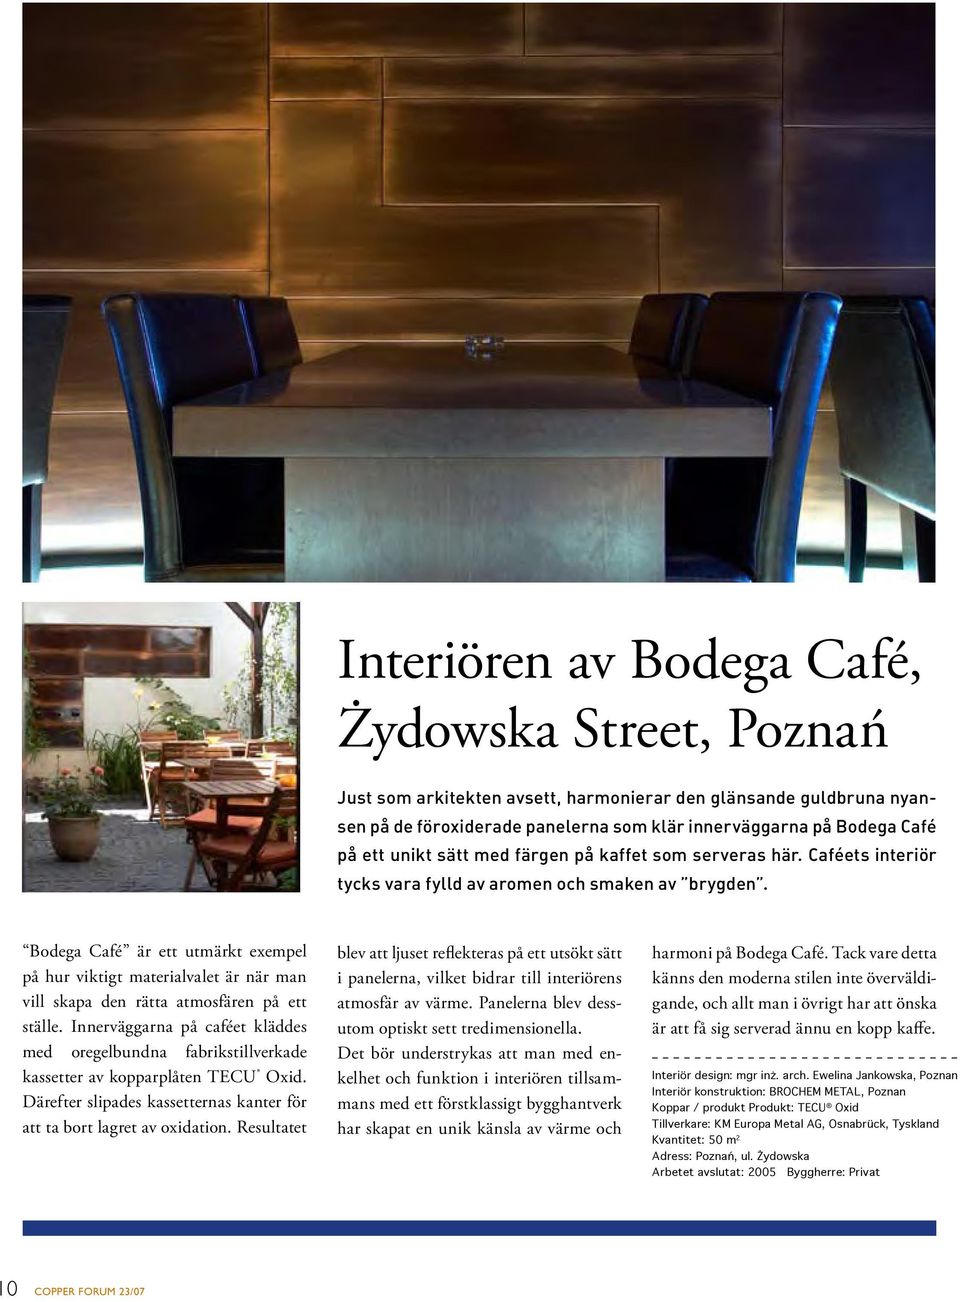 Bodega Café är ett utmärkt exempel på hur viktigt materialvalet är när man vill skapa den rätta atmosfären på ett ställe.